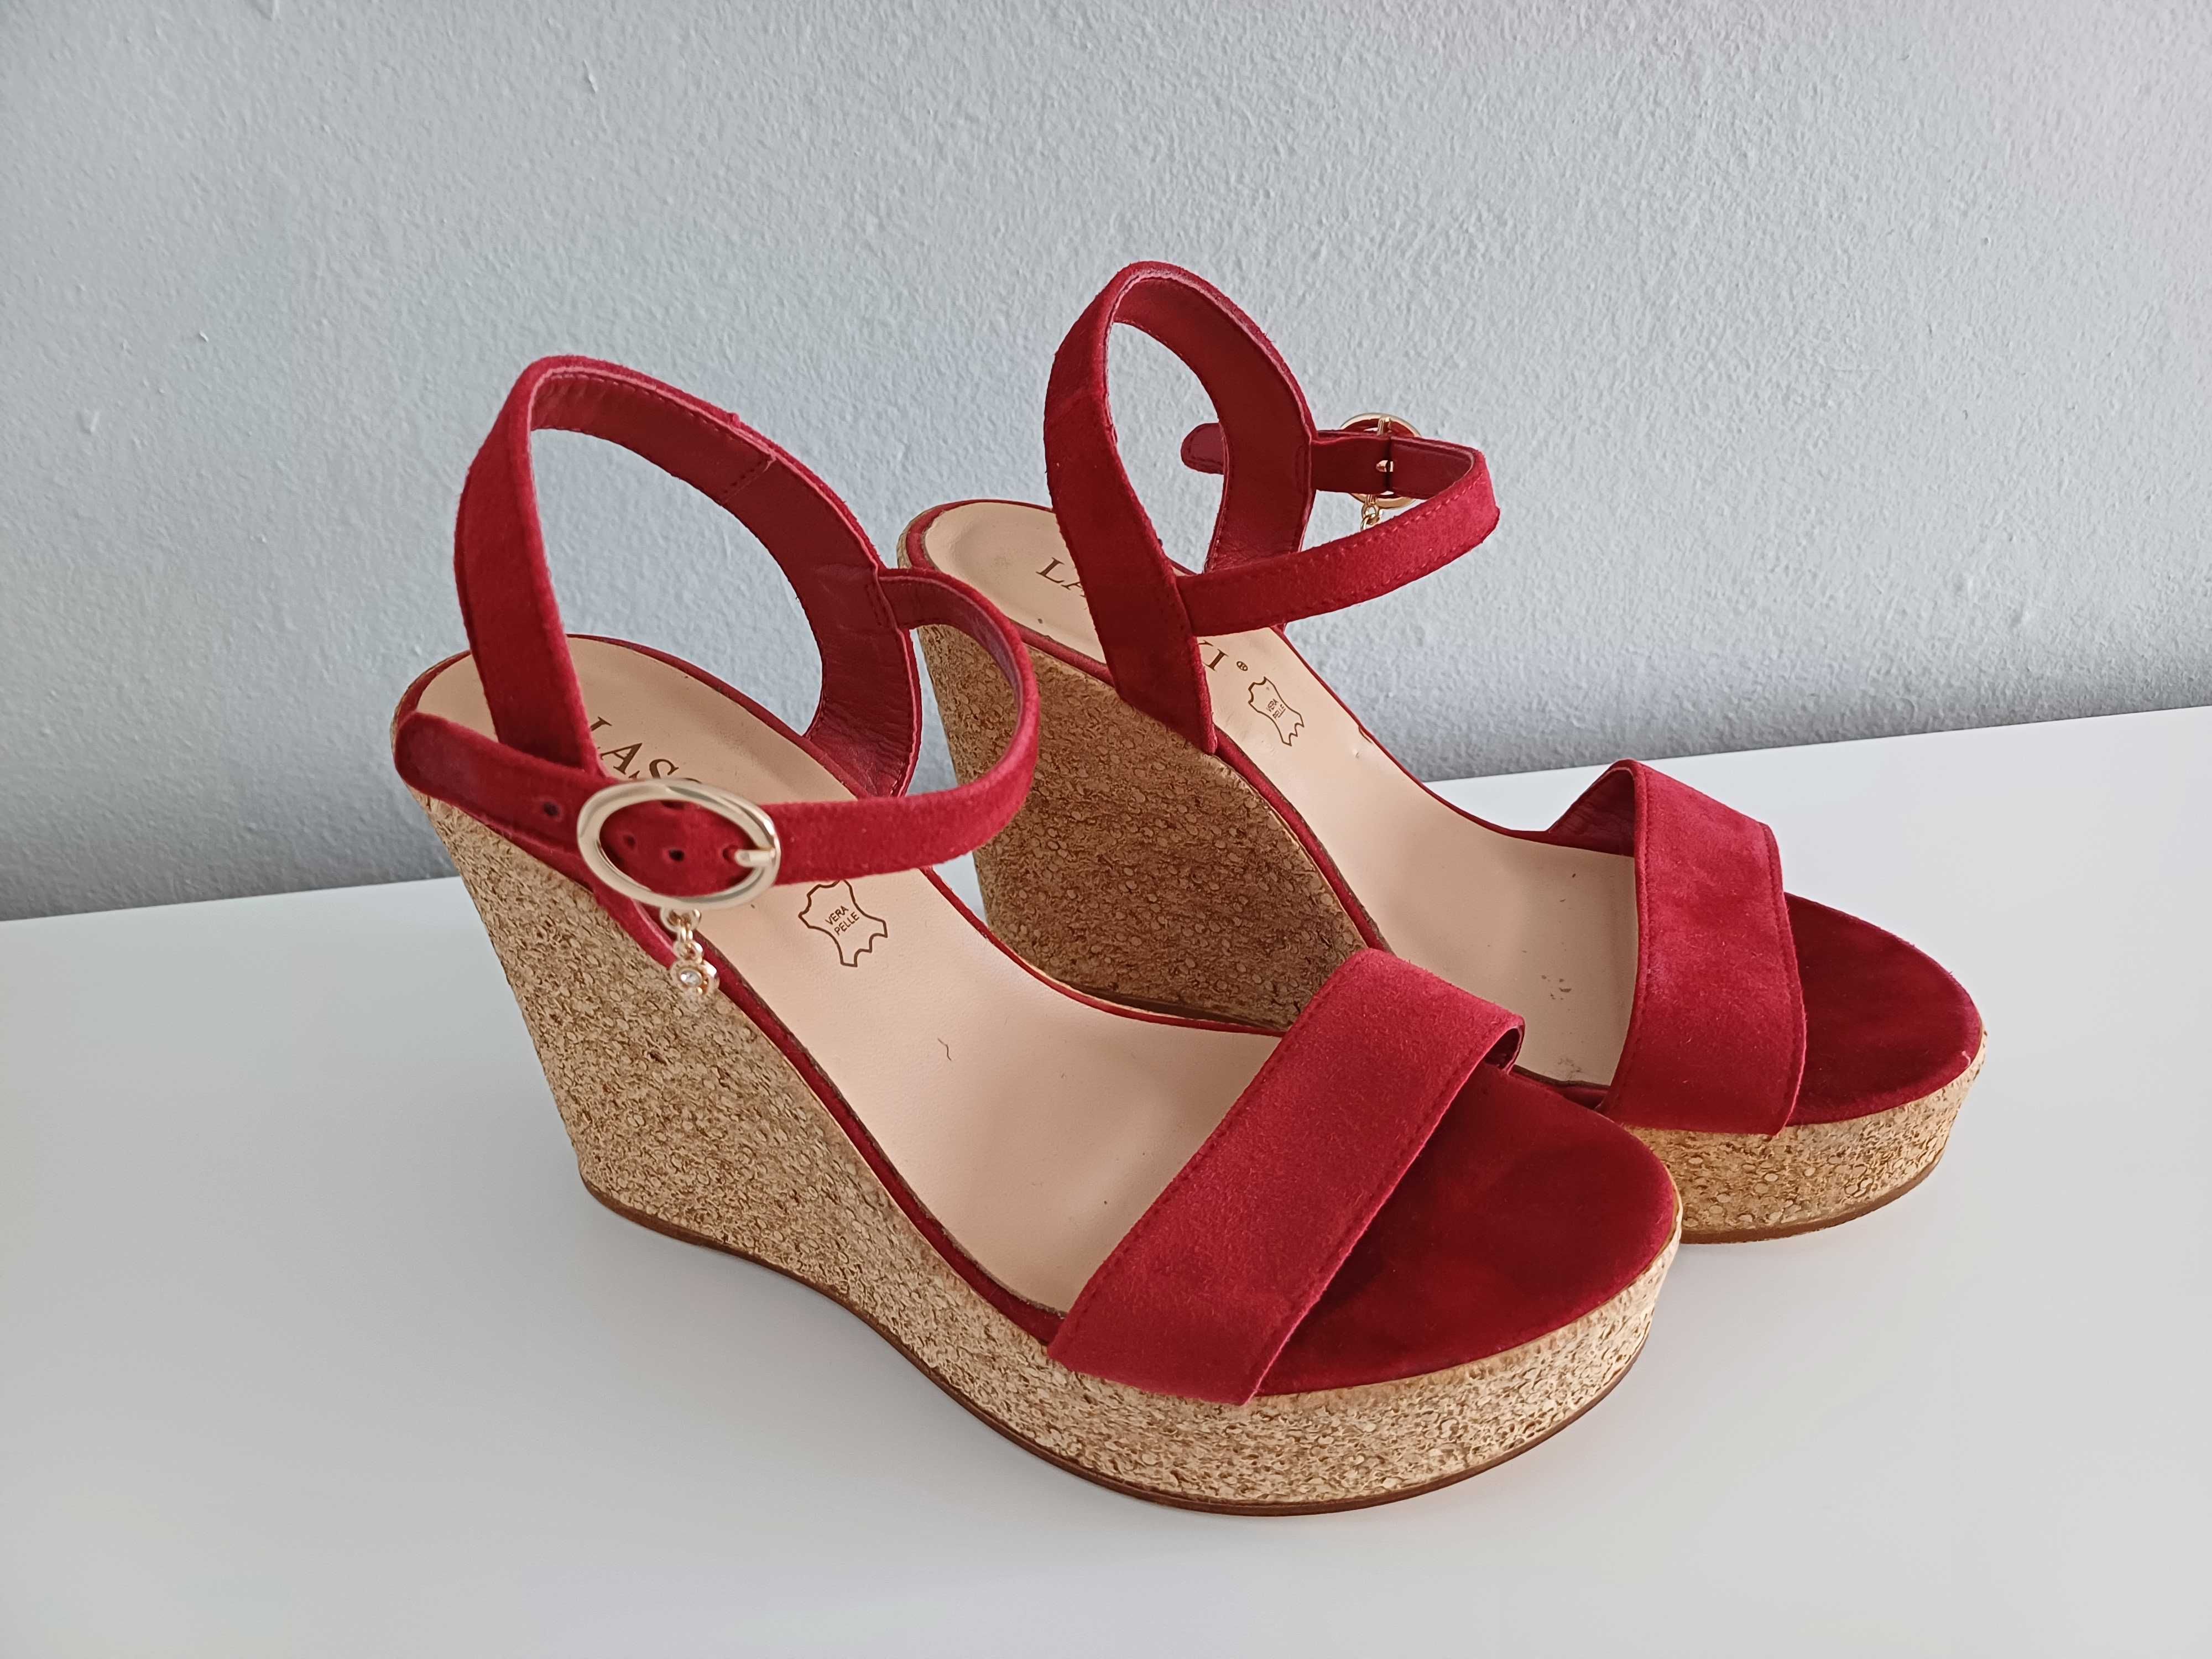 Buty damskie na koturnie sandały czerwone z paseczkami Lasocki 36